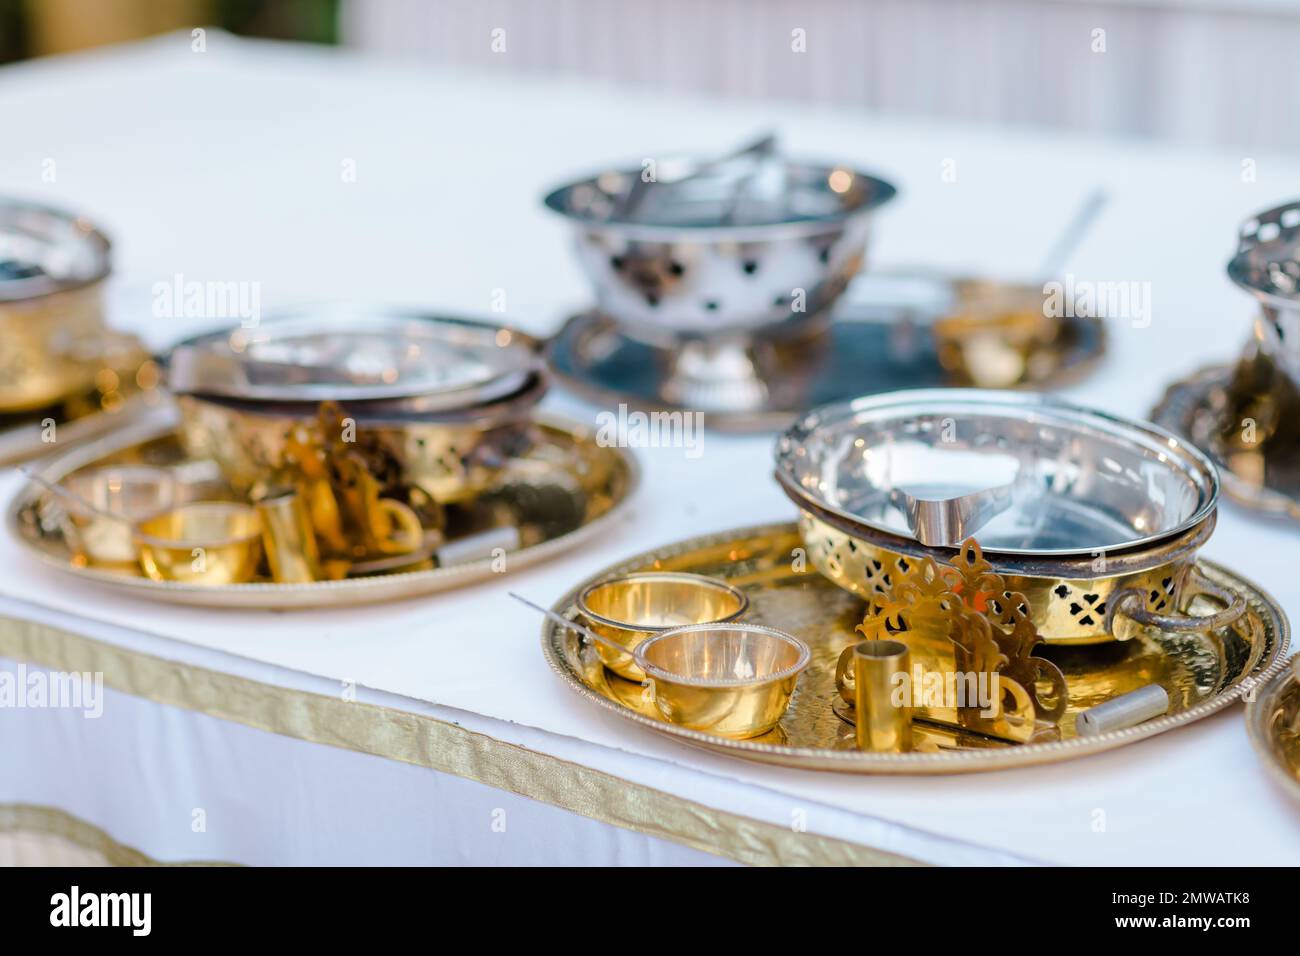 Gros plan d'ustensiles dorés sur une table avec nappe blanche Photo Stock -  Alamy